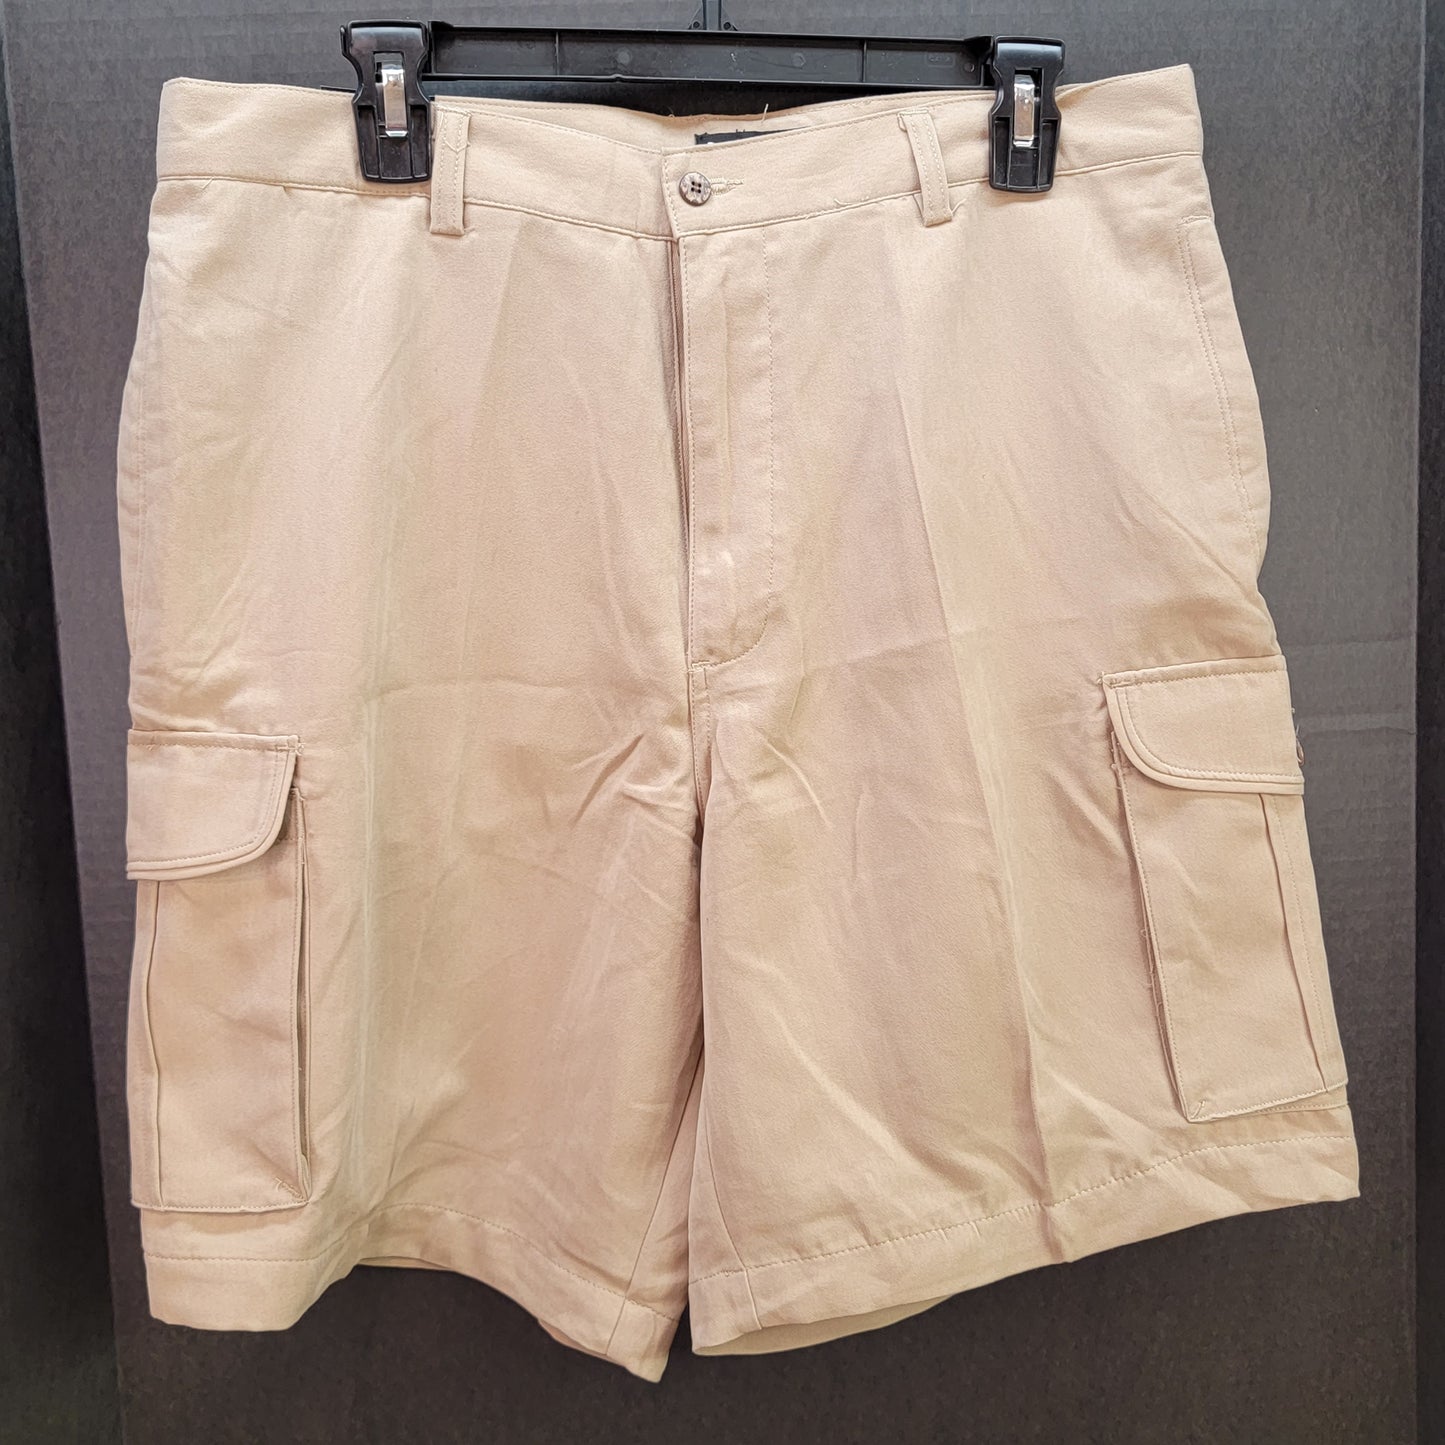 Bogari Men's Shorts Color: Khaki Size 36 Retail $59